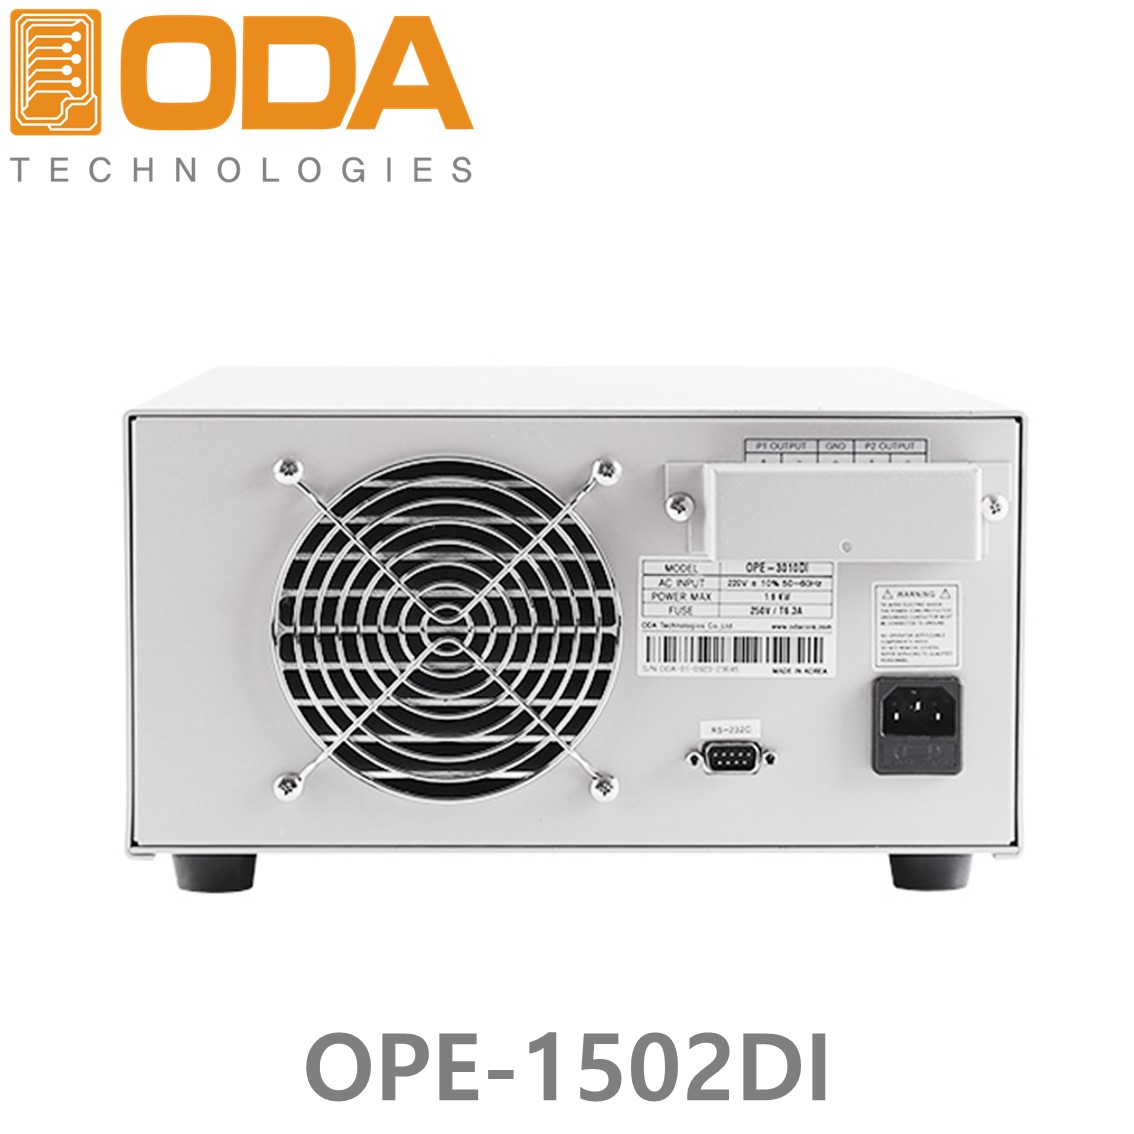 [ ODA ] OPE-1502DI  2채널/150V/2A/600W  리니어 프로그래머블 DC파워서플라이